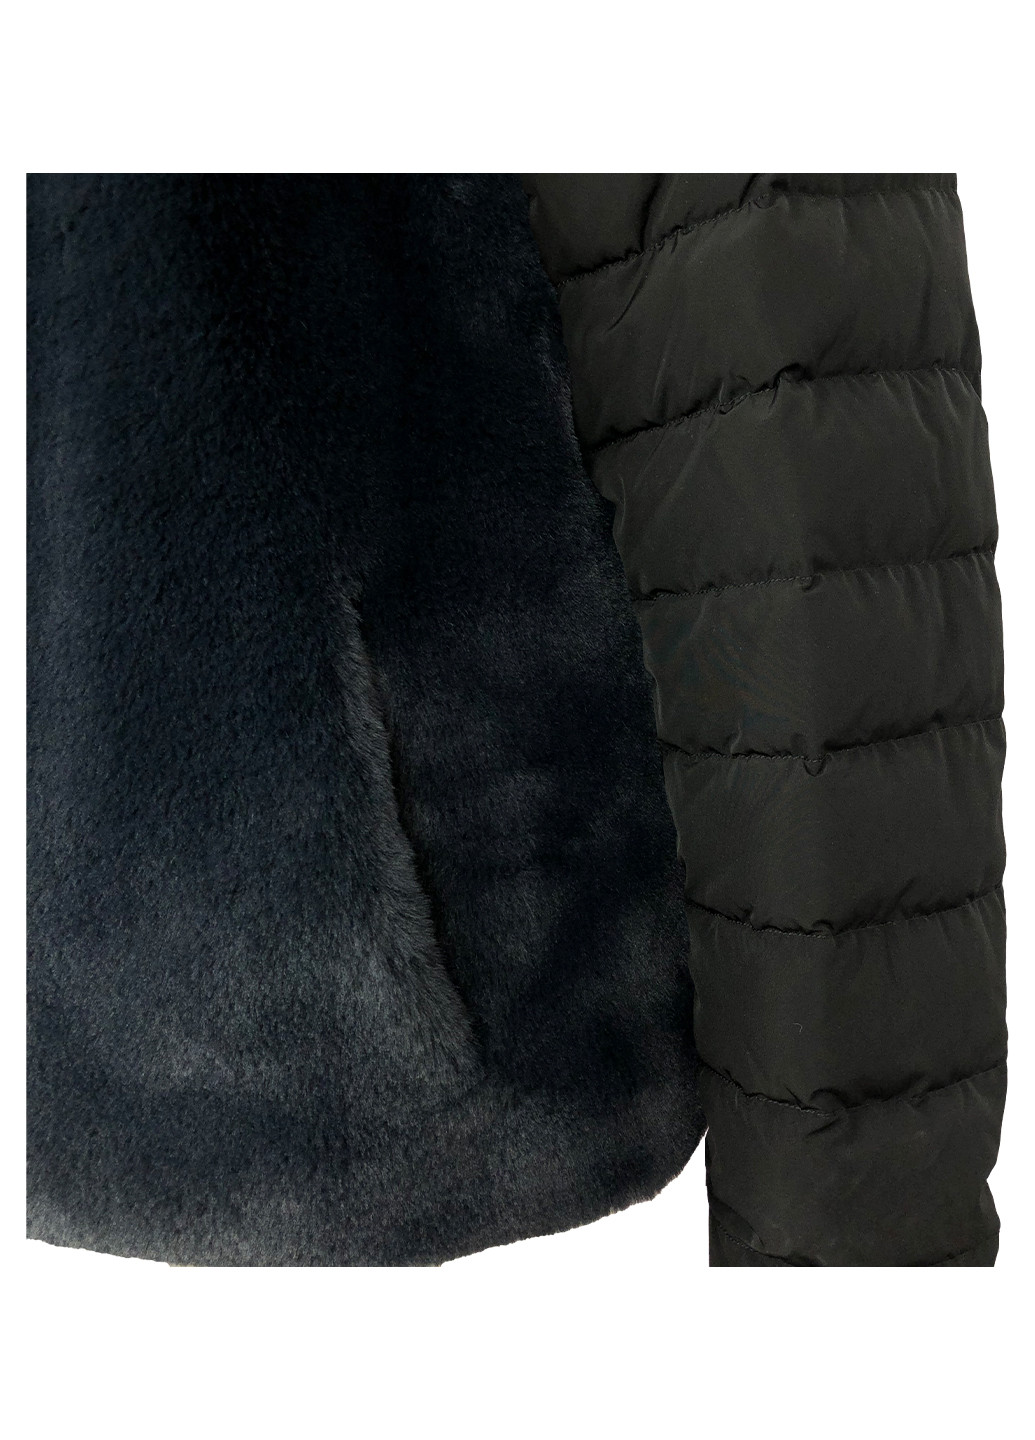 Черная зимняя женская короткая зимняя куртка с мехом Guxy